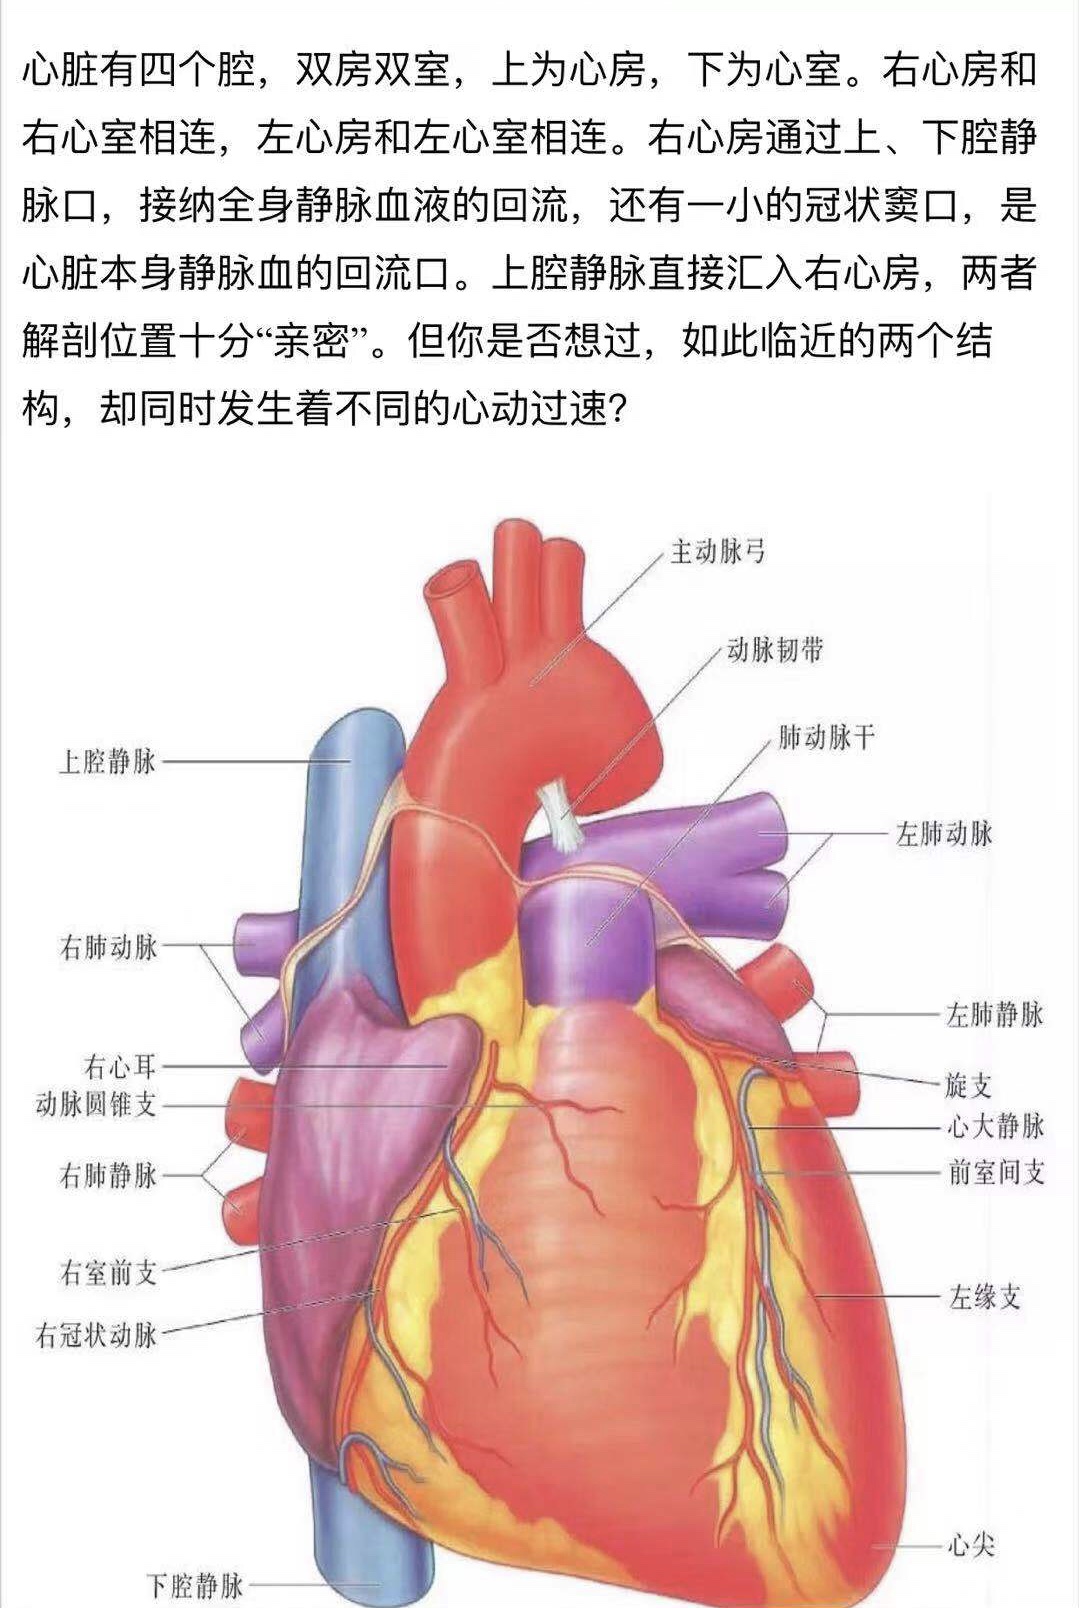 PPT:心脏的解剖结构及传导系统__中国医疗